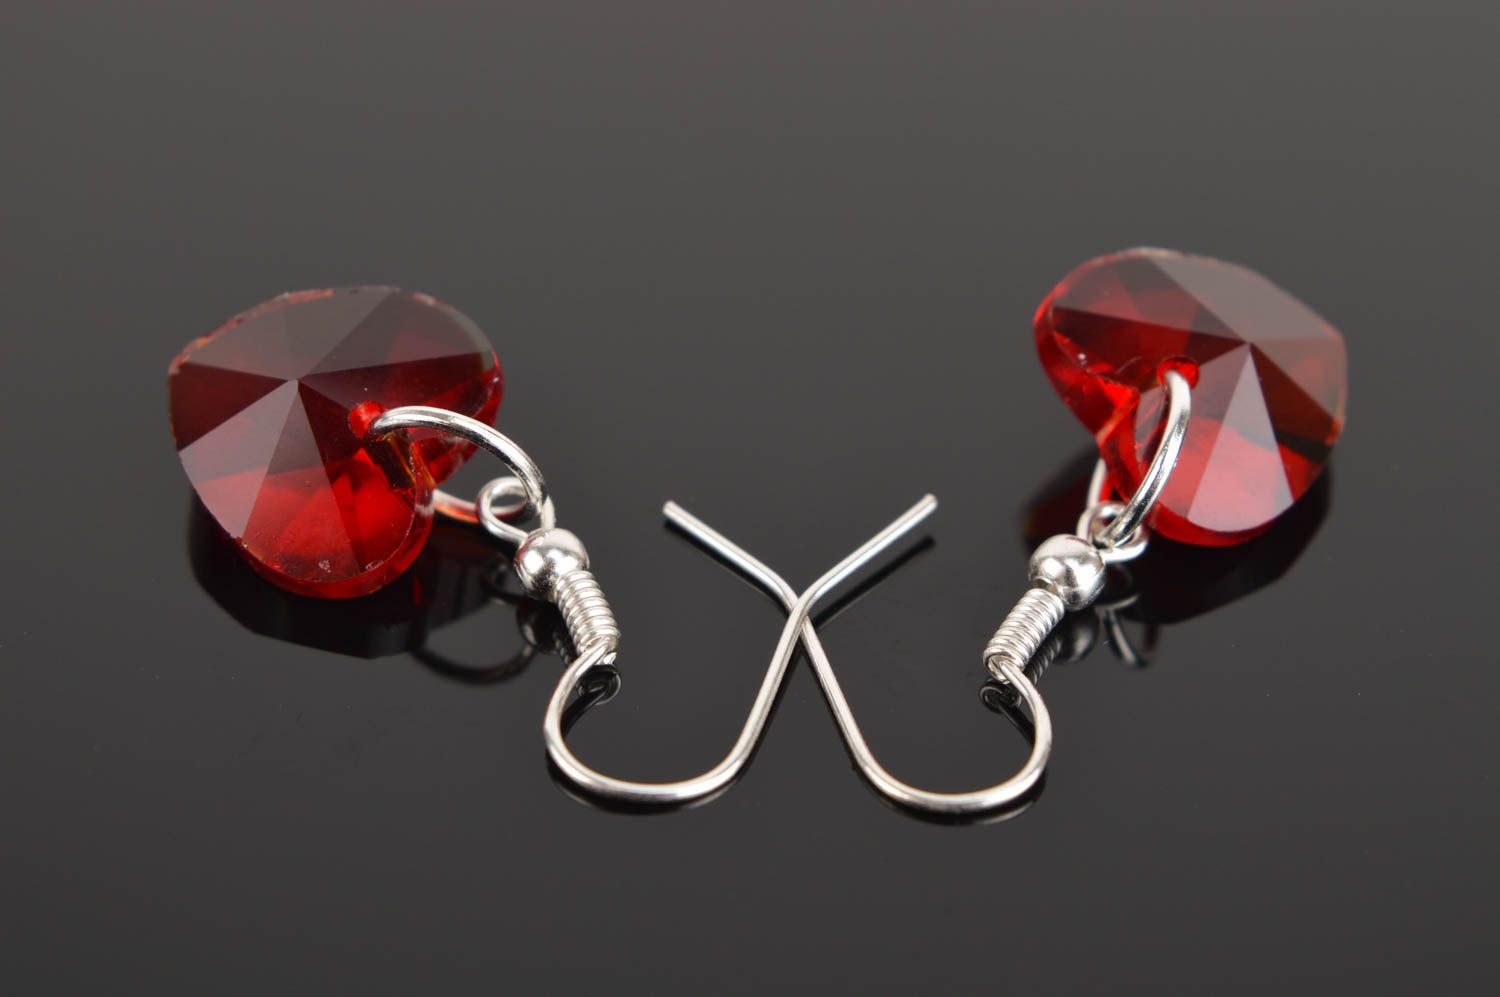 Handmade earrings designer earrings glass jewelry gift ideas unusual accessory photo 5